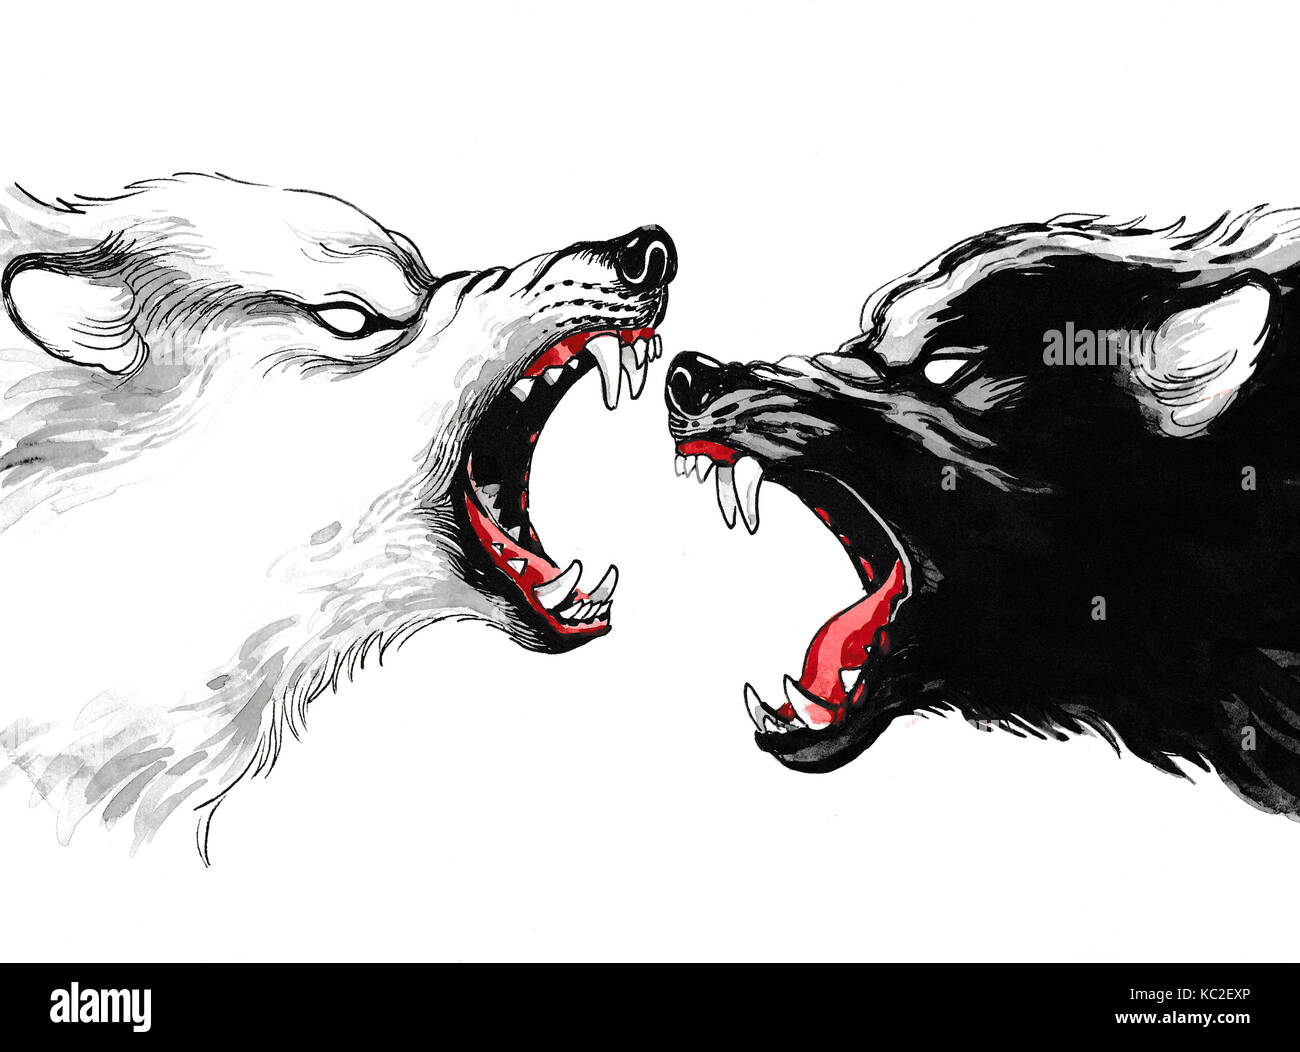 Белый и черный волк борьба